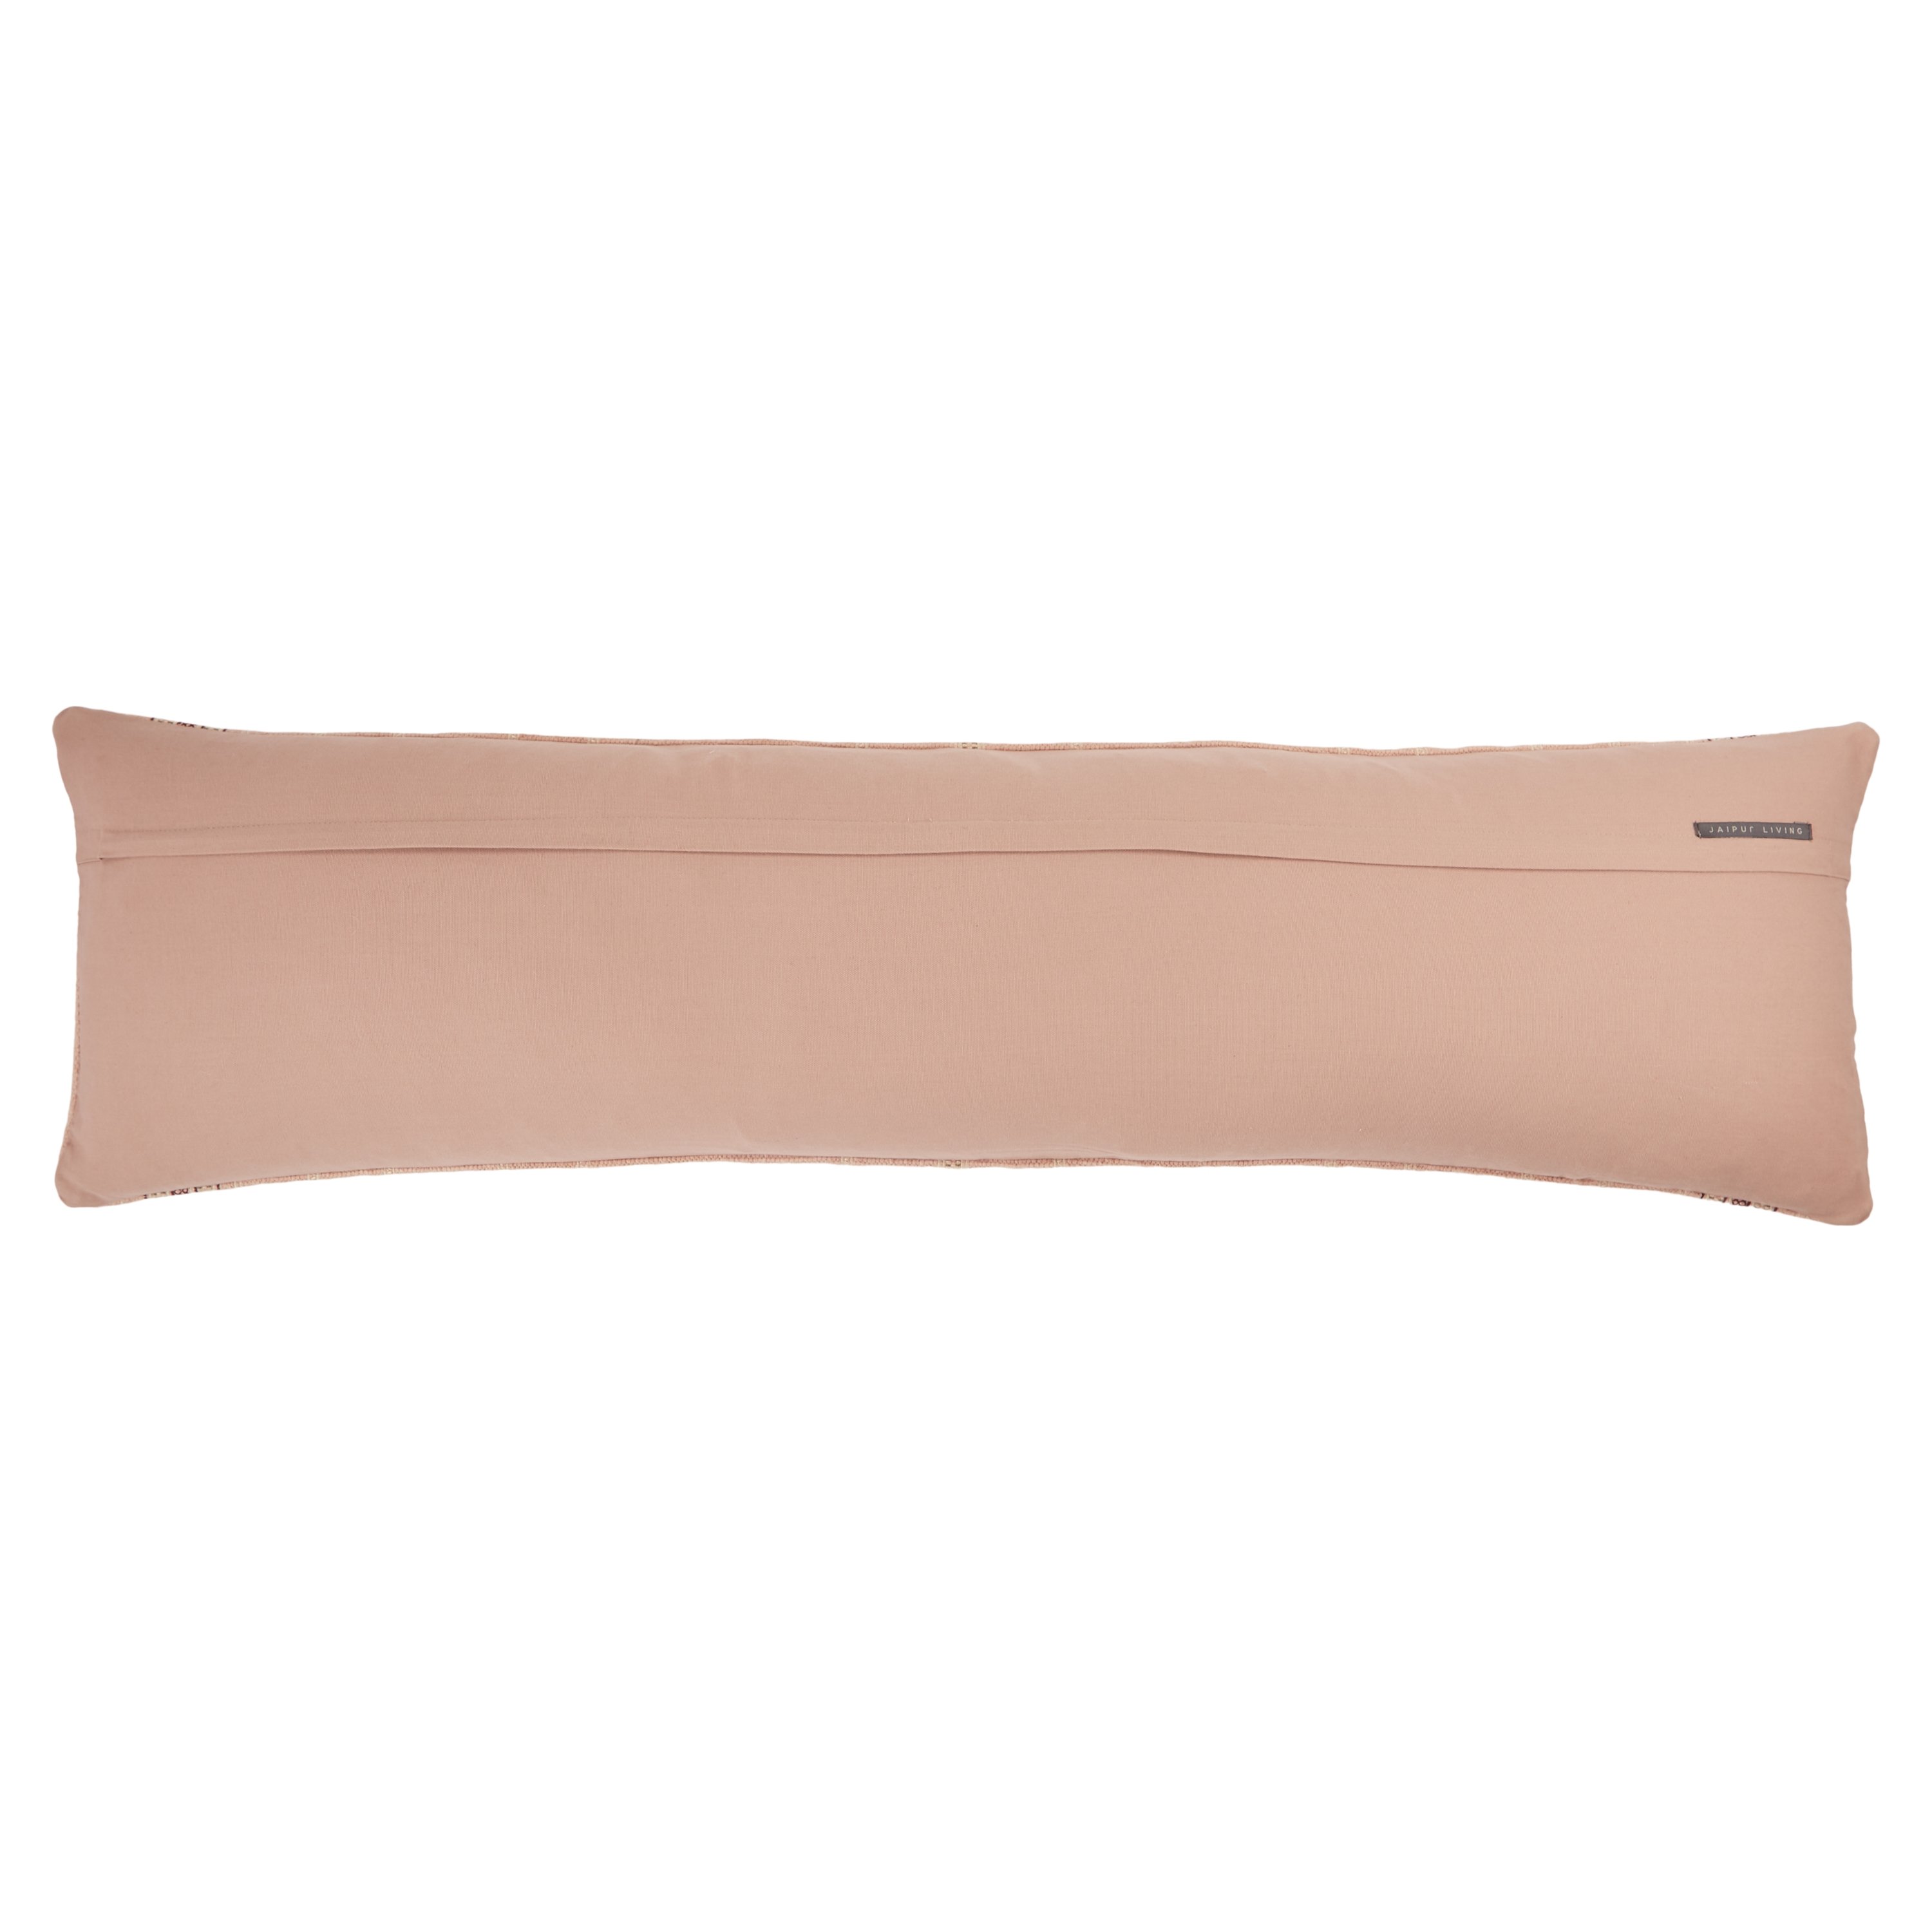 Amezri Extra Long Lumbar Pillow, Blush, 48" x 13" - Image 1